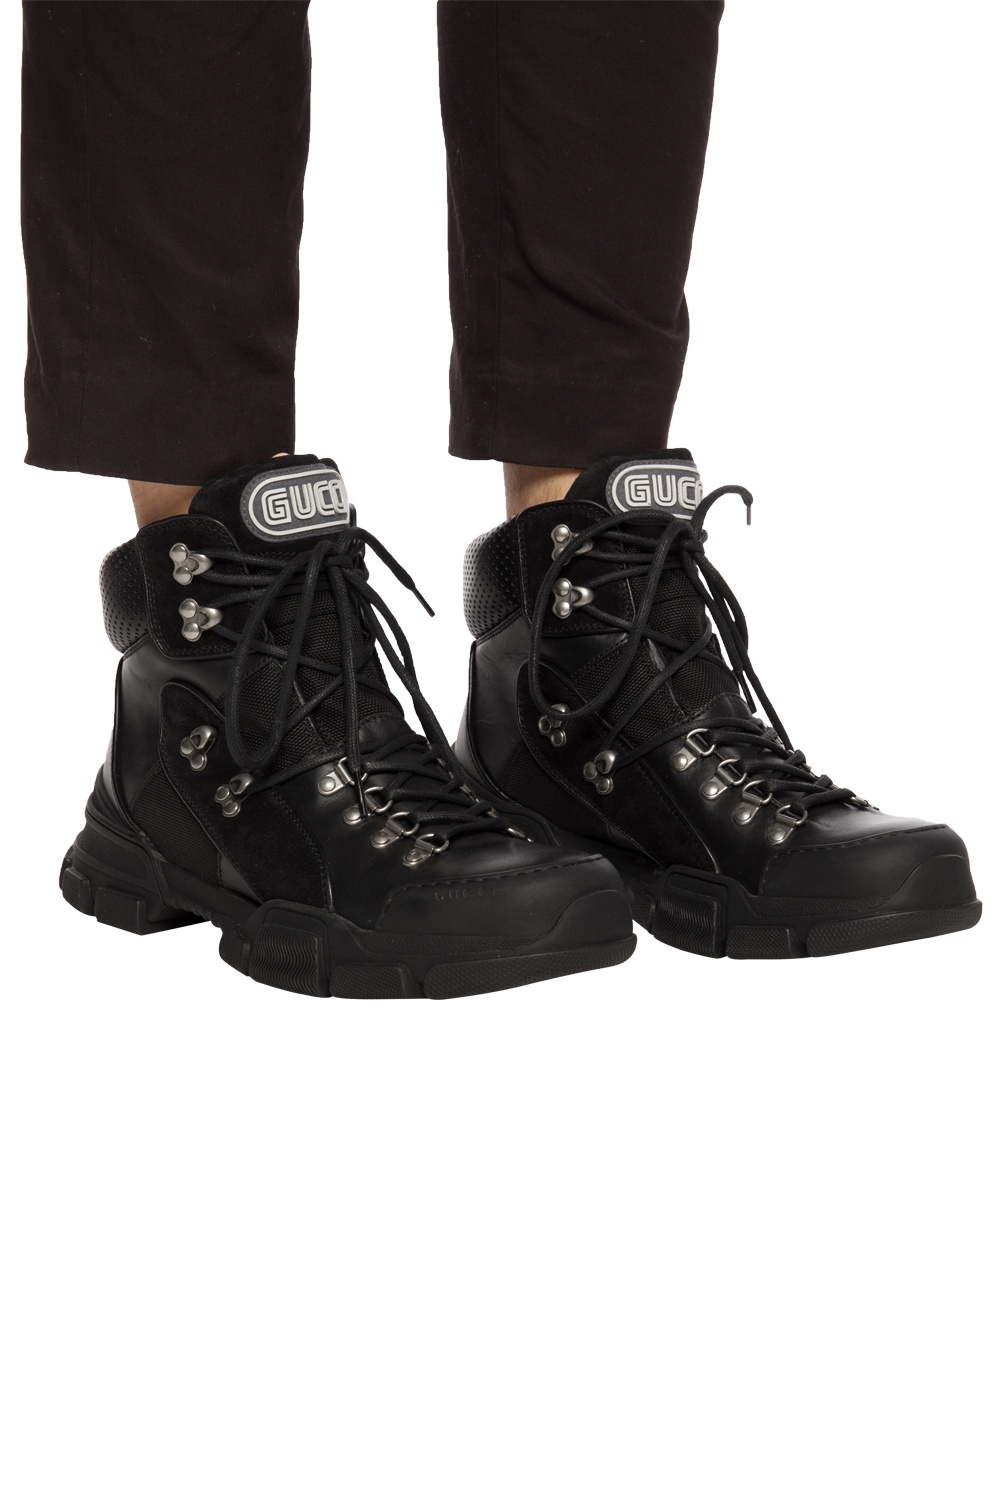 gucci flashtrek boot